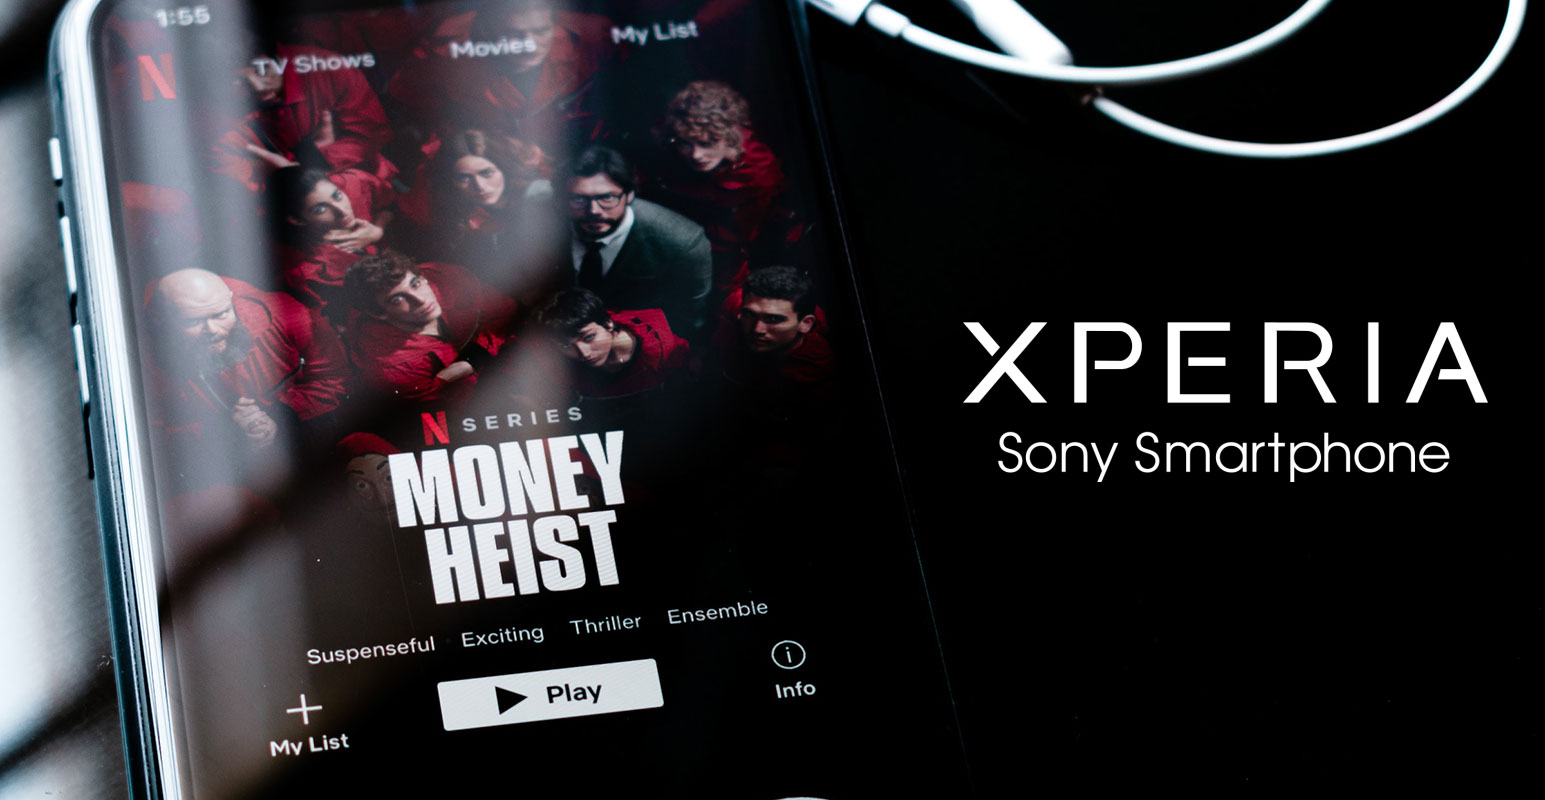 Sony Xperia Smart Phone Netflix Low Quality